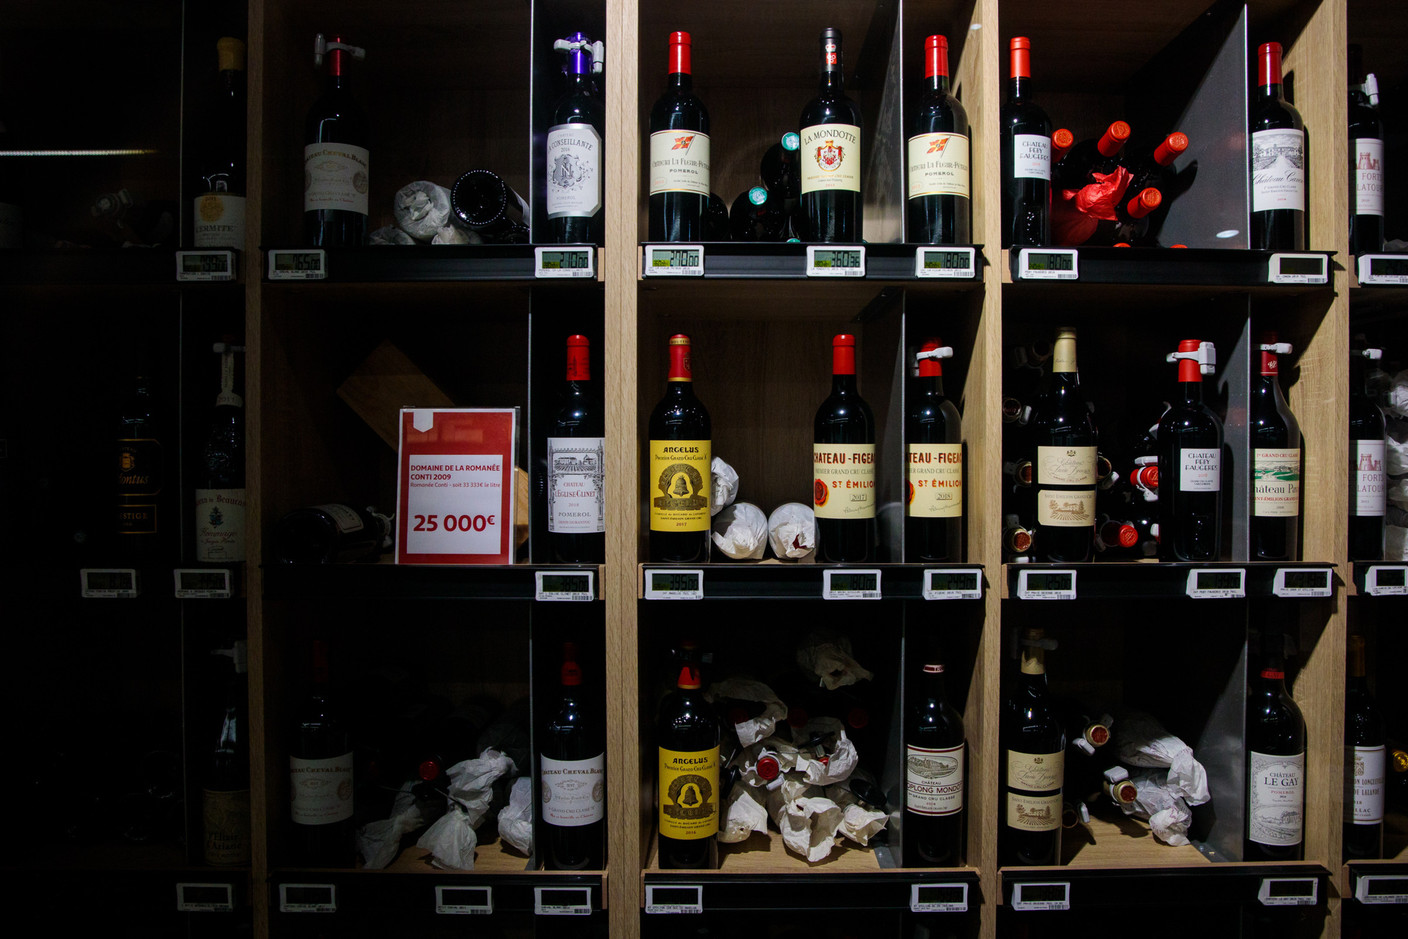 Des bouteilles de vin haut de gamme sont aussi proposées, parmi les 1.500 références que compte le rayon vins.  (Photo: Matic Zorman / Maison Moderne)